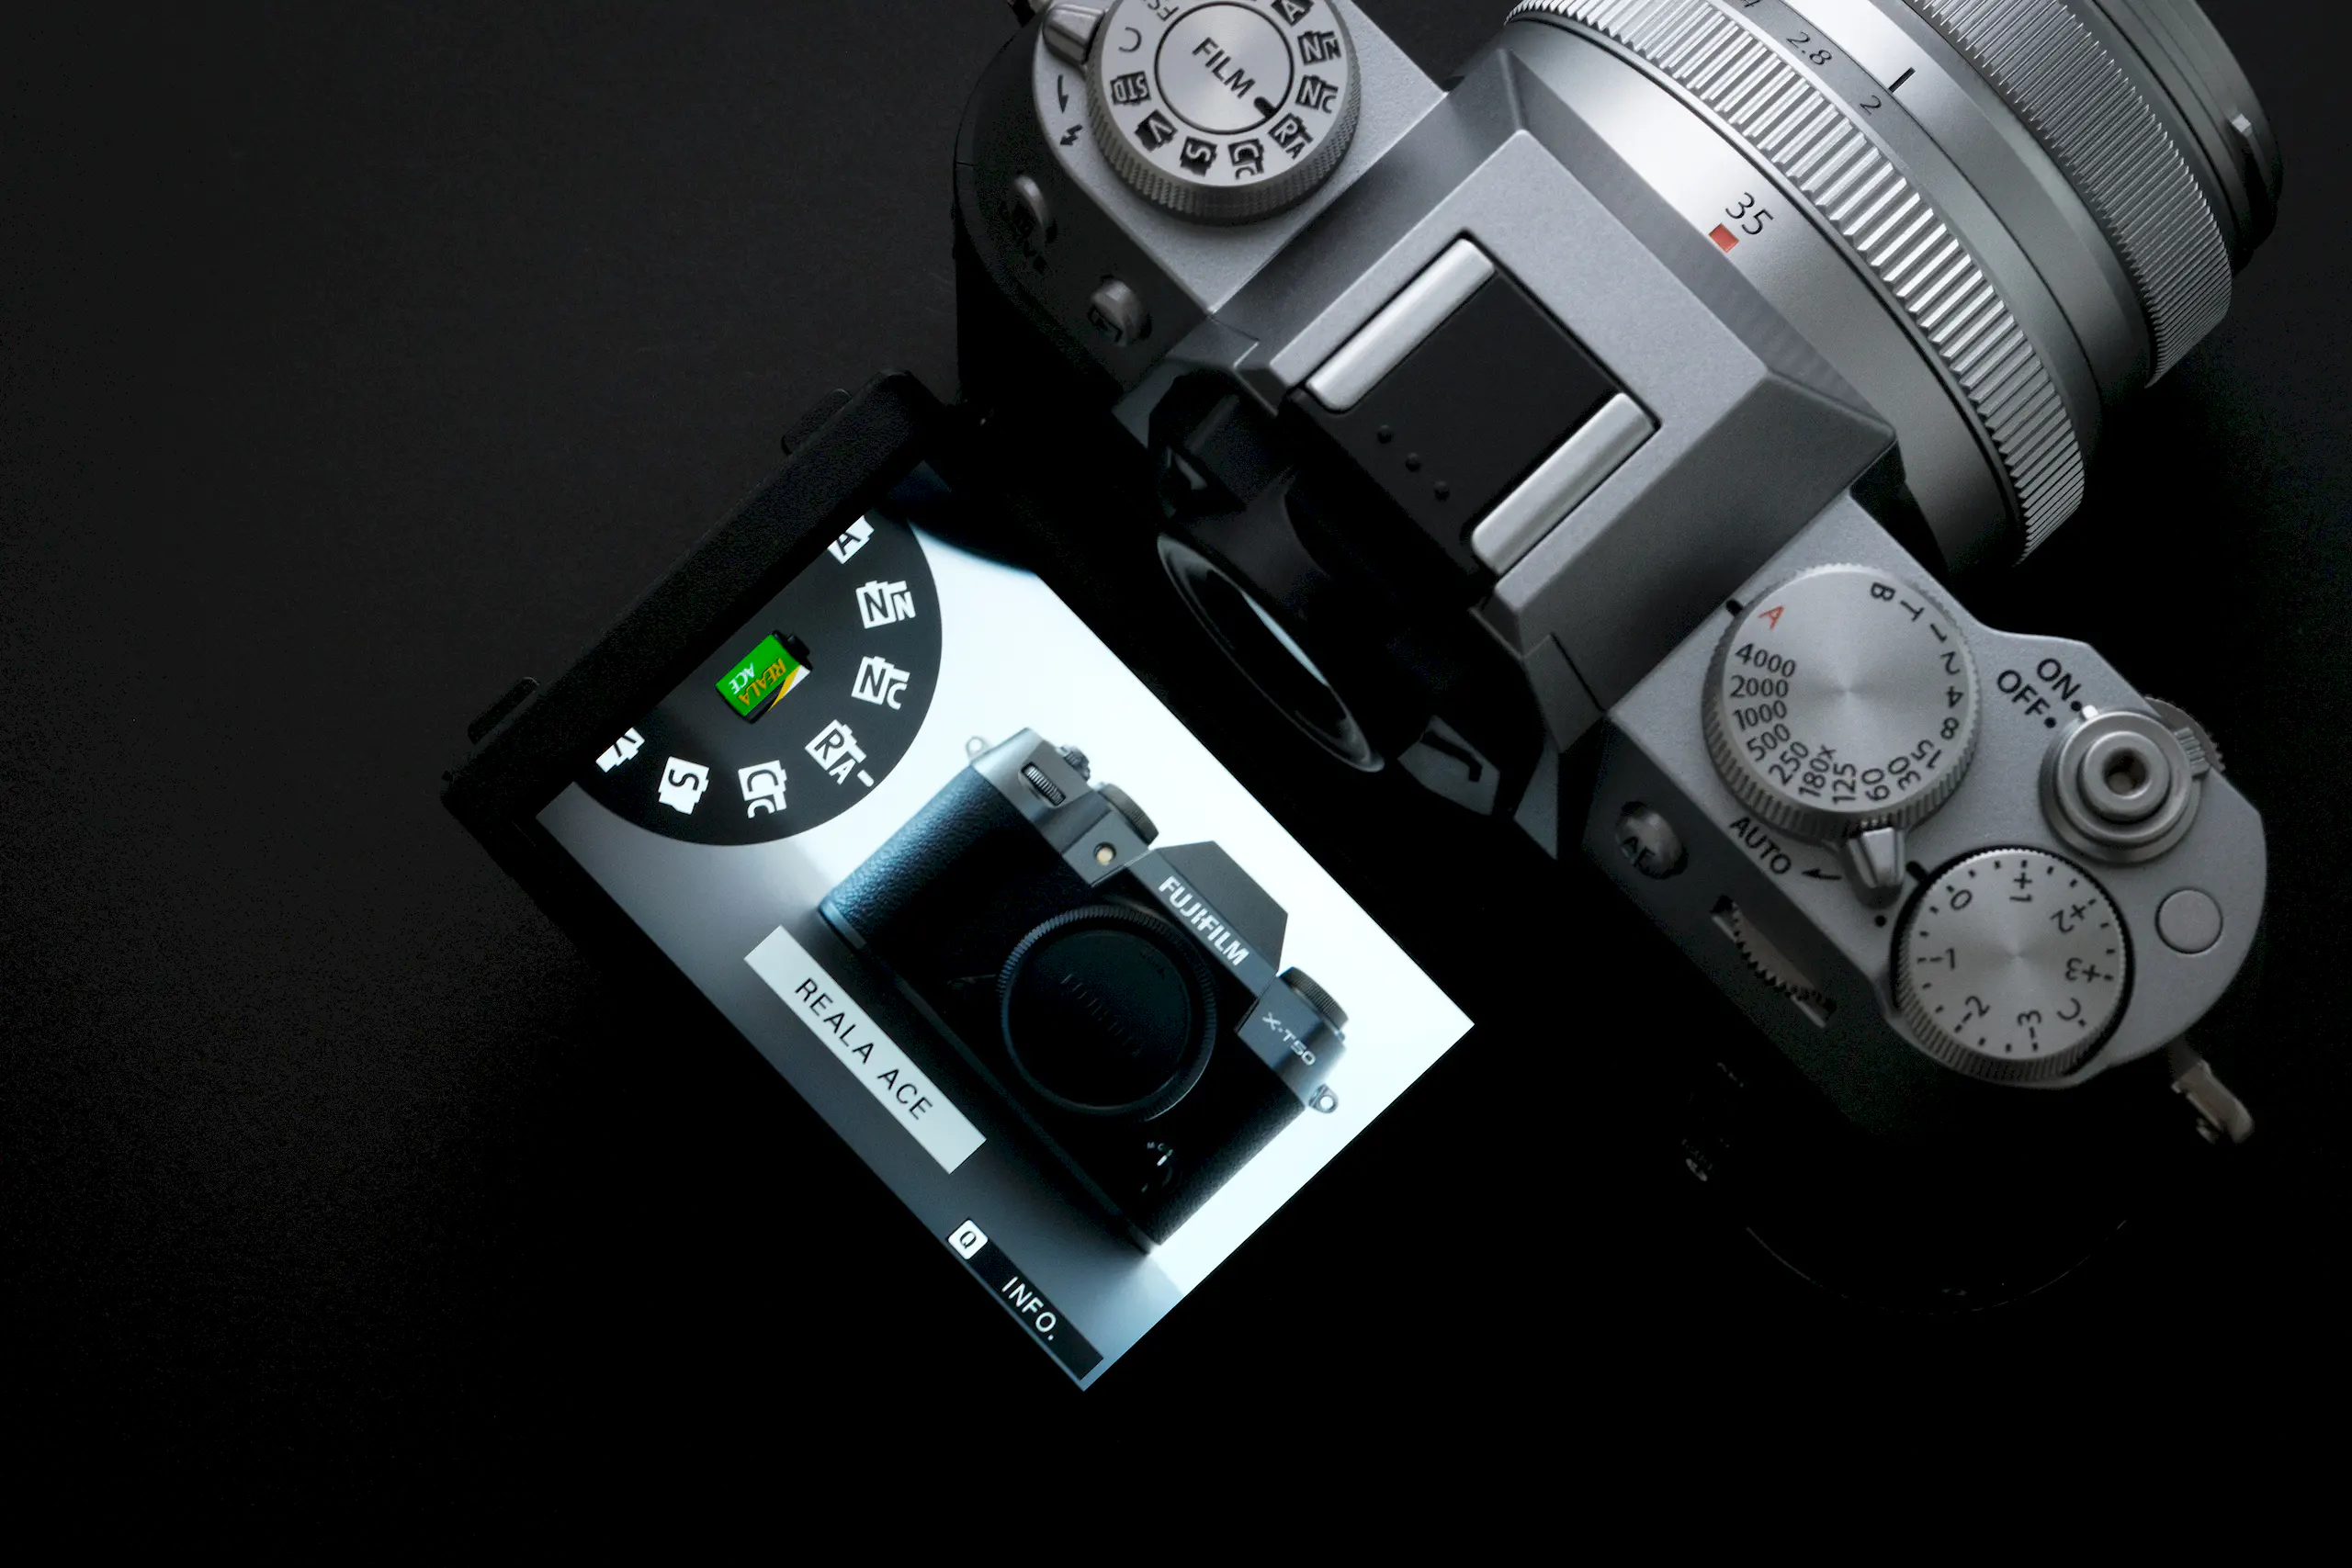 Fujifilm X-T50 ra mắt tại Việt Nam, trang bị cảm biến 40.2MP, tích hợp IBIS 7-stop